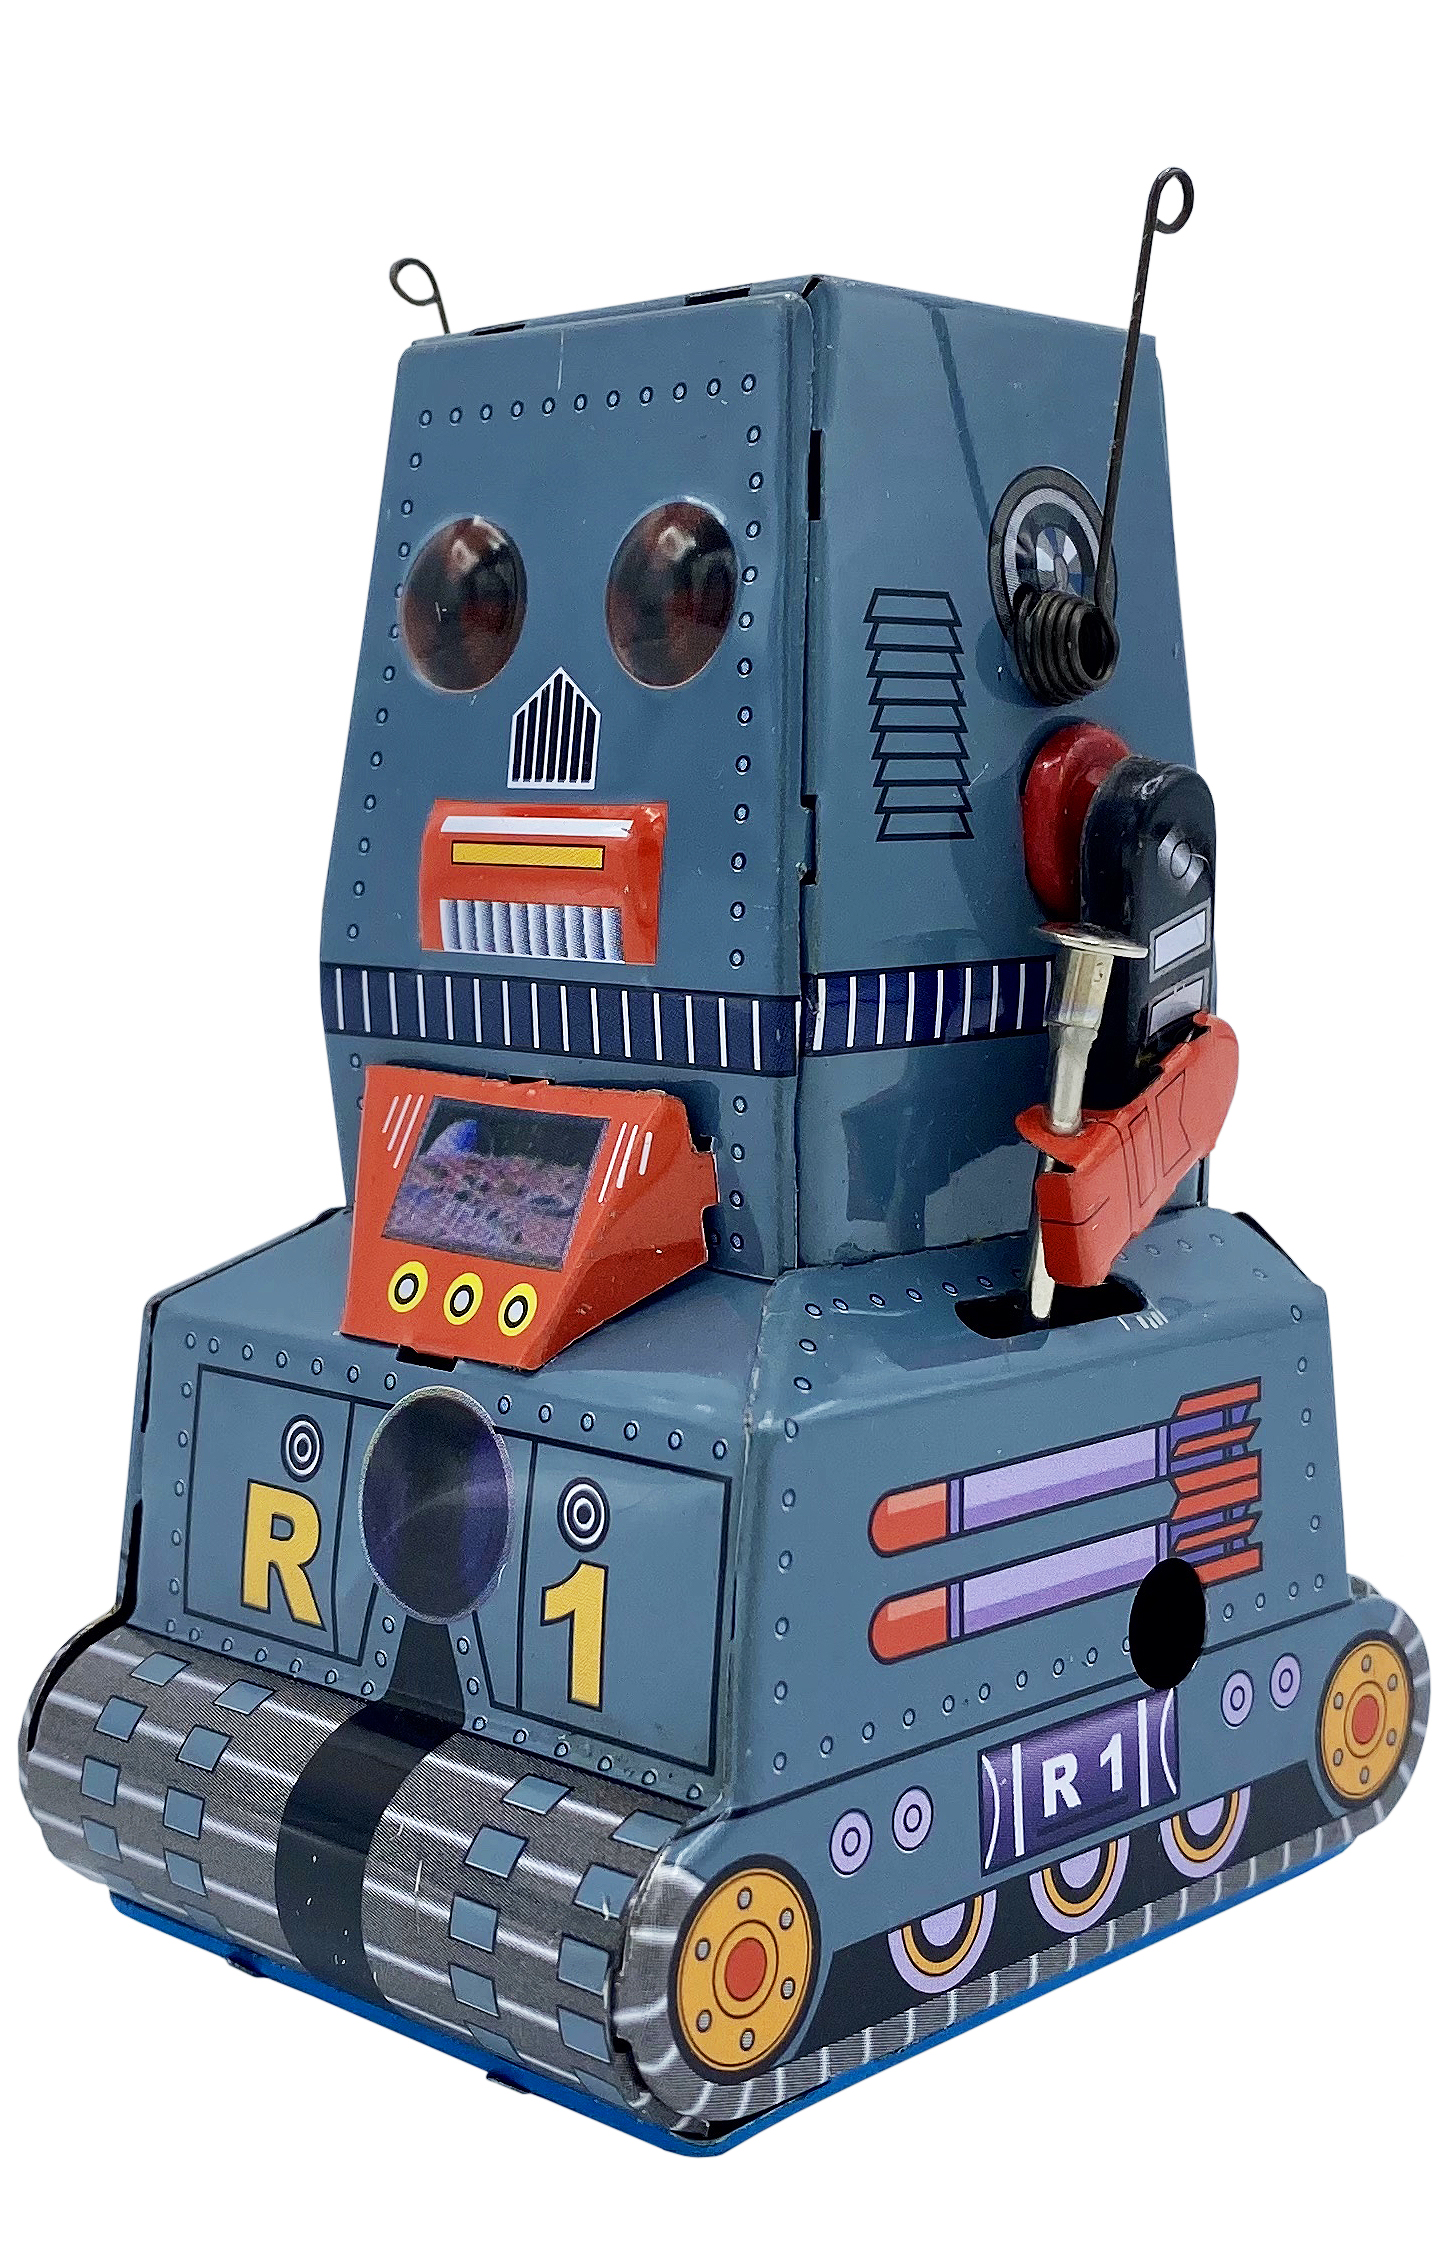 Collectible Tin Toy - Robot